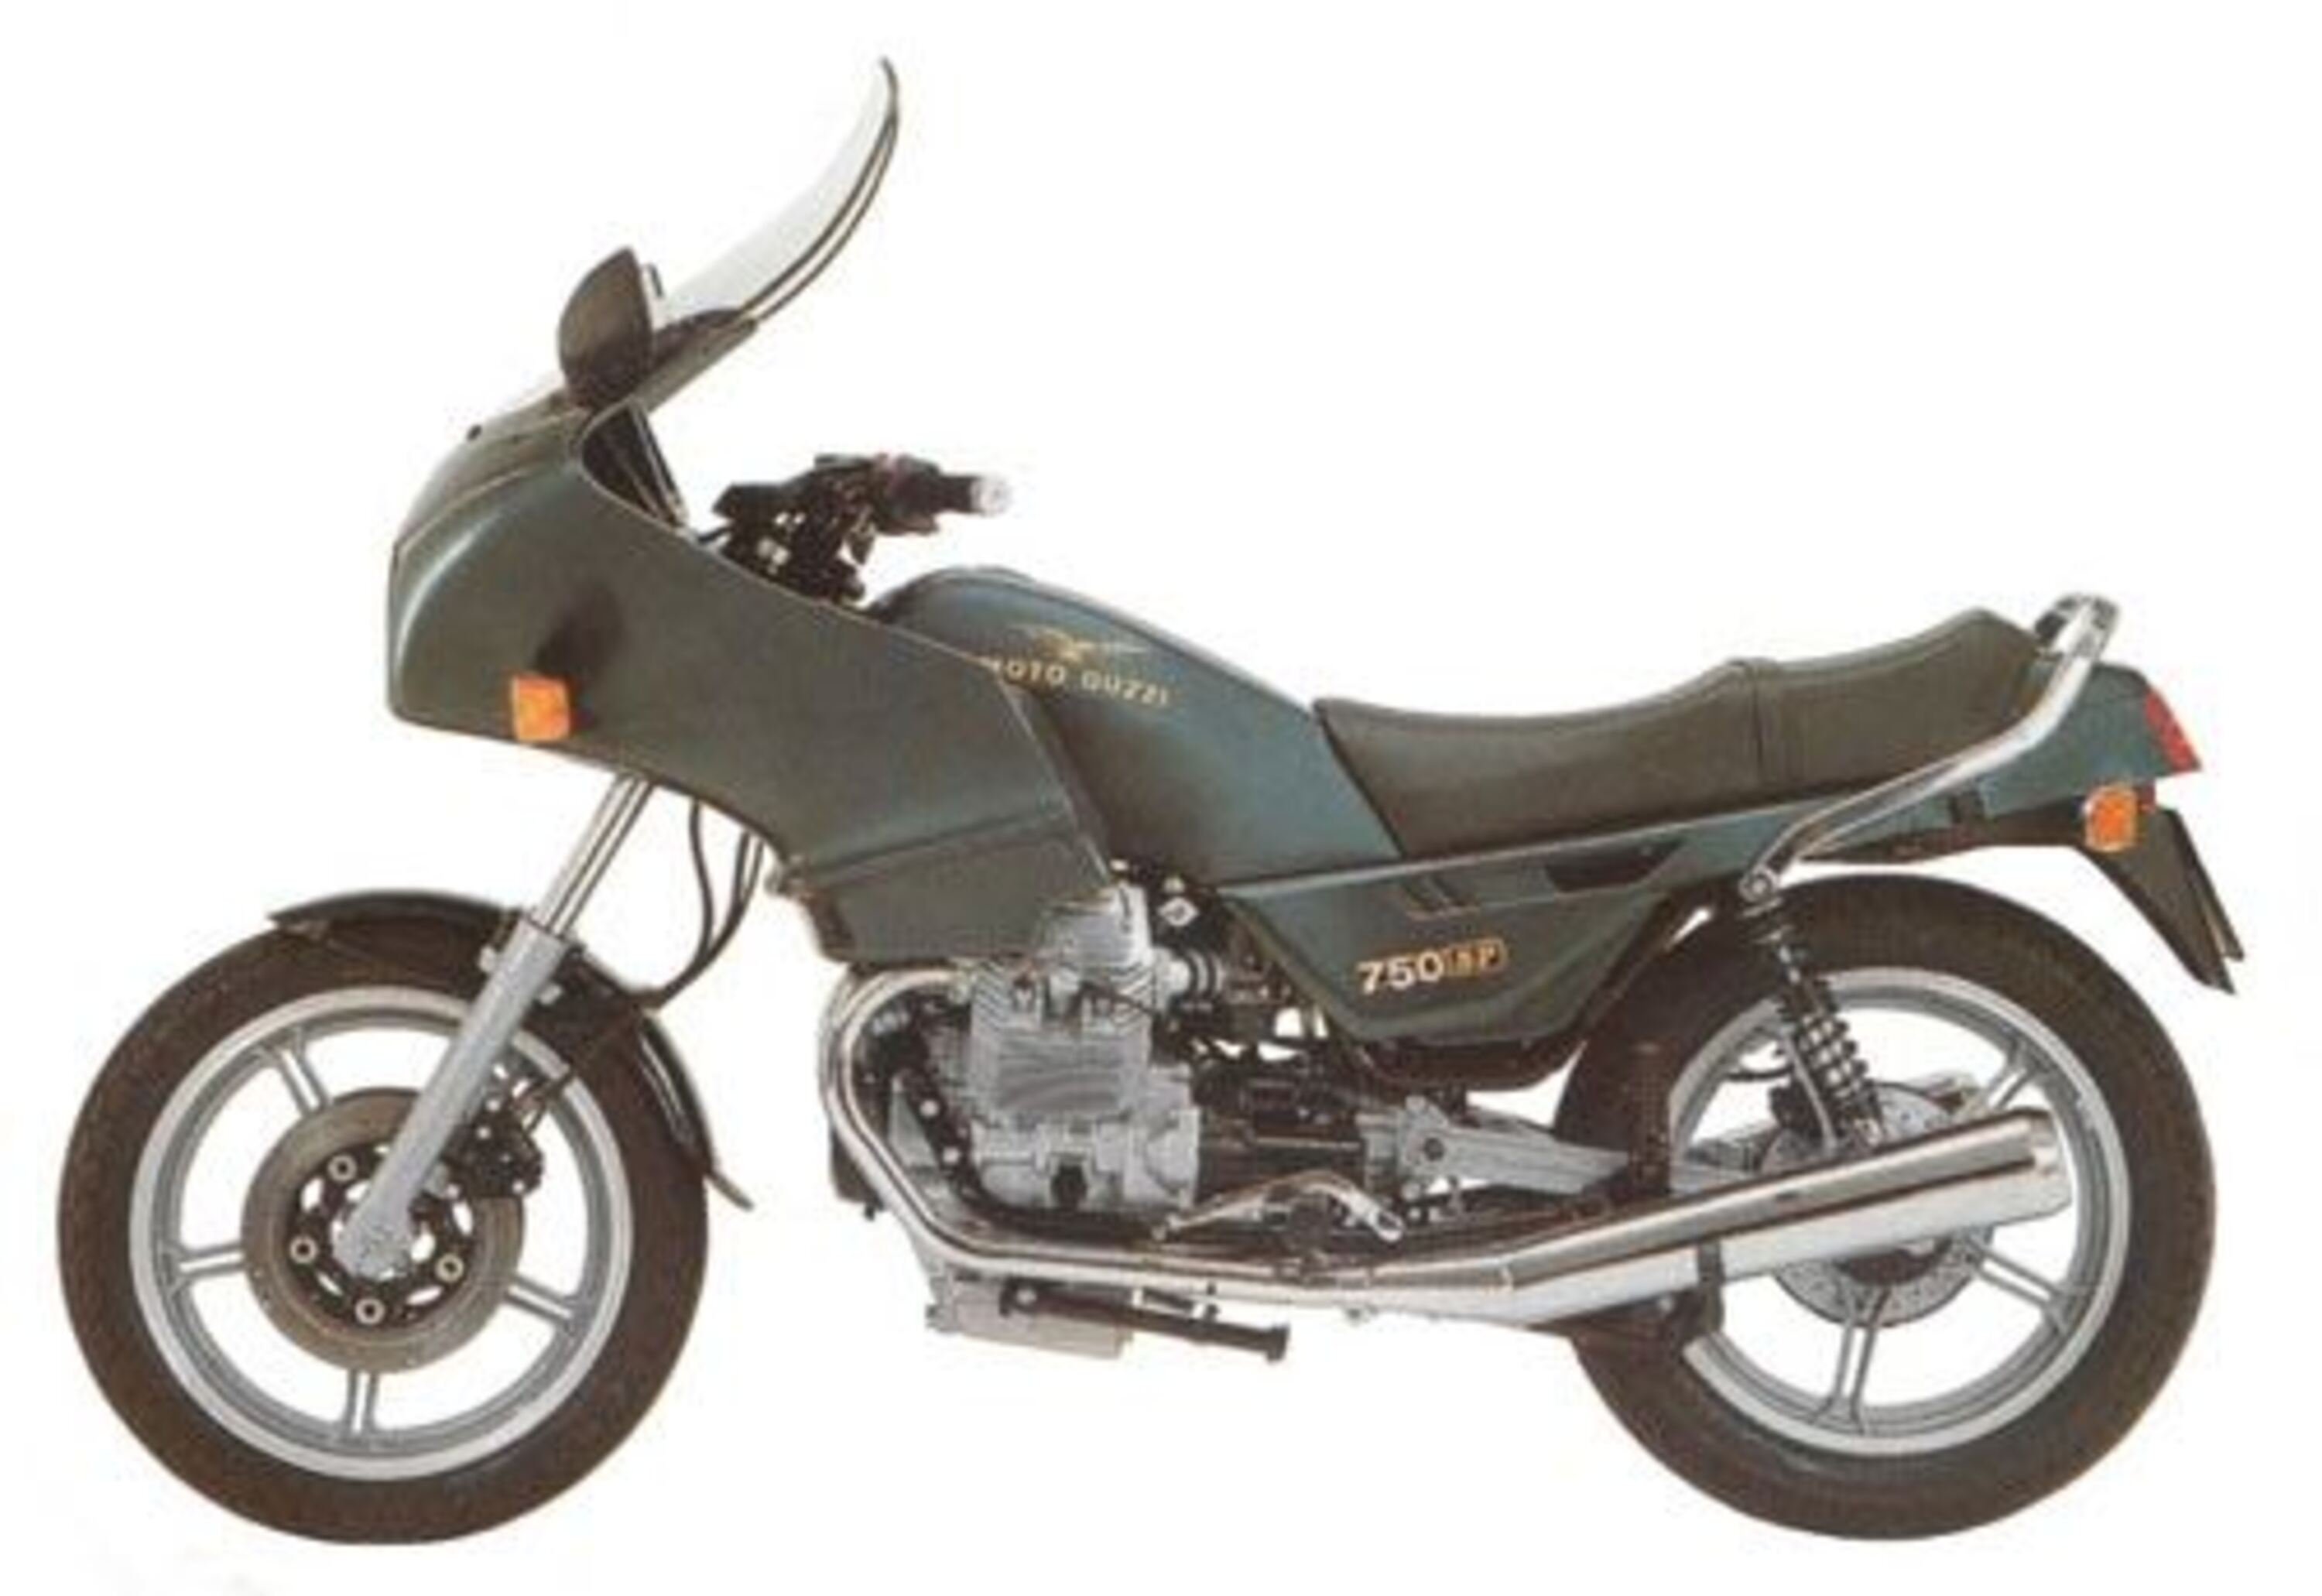 Moto Guzzi SP 750 SP 750